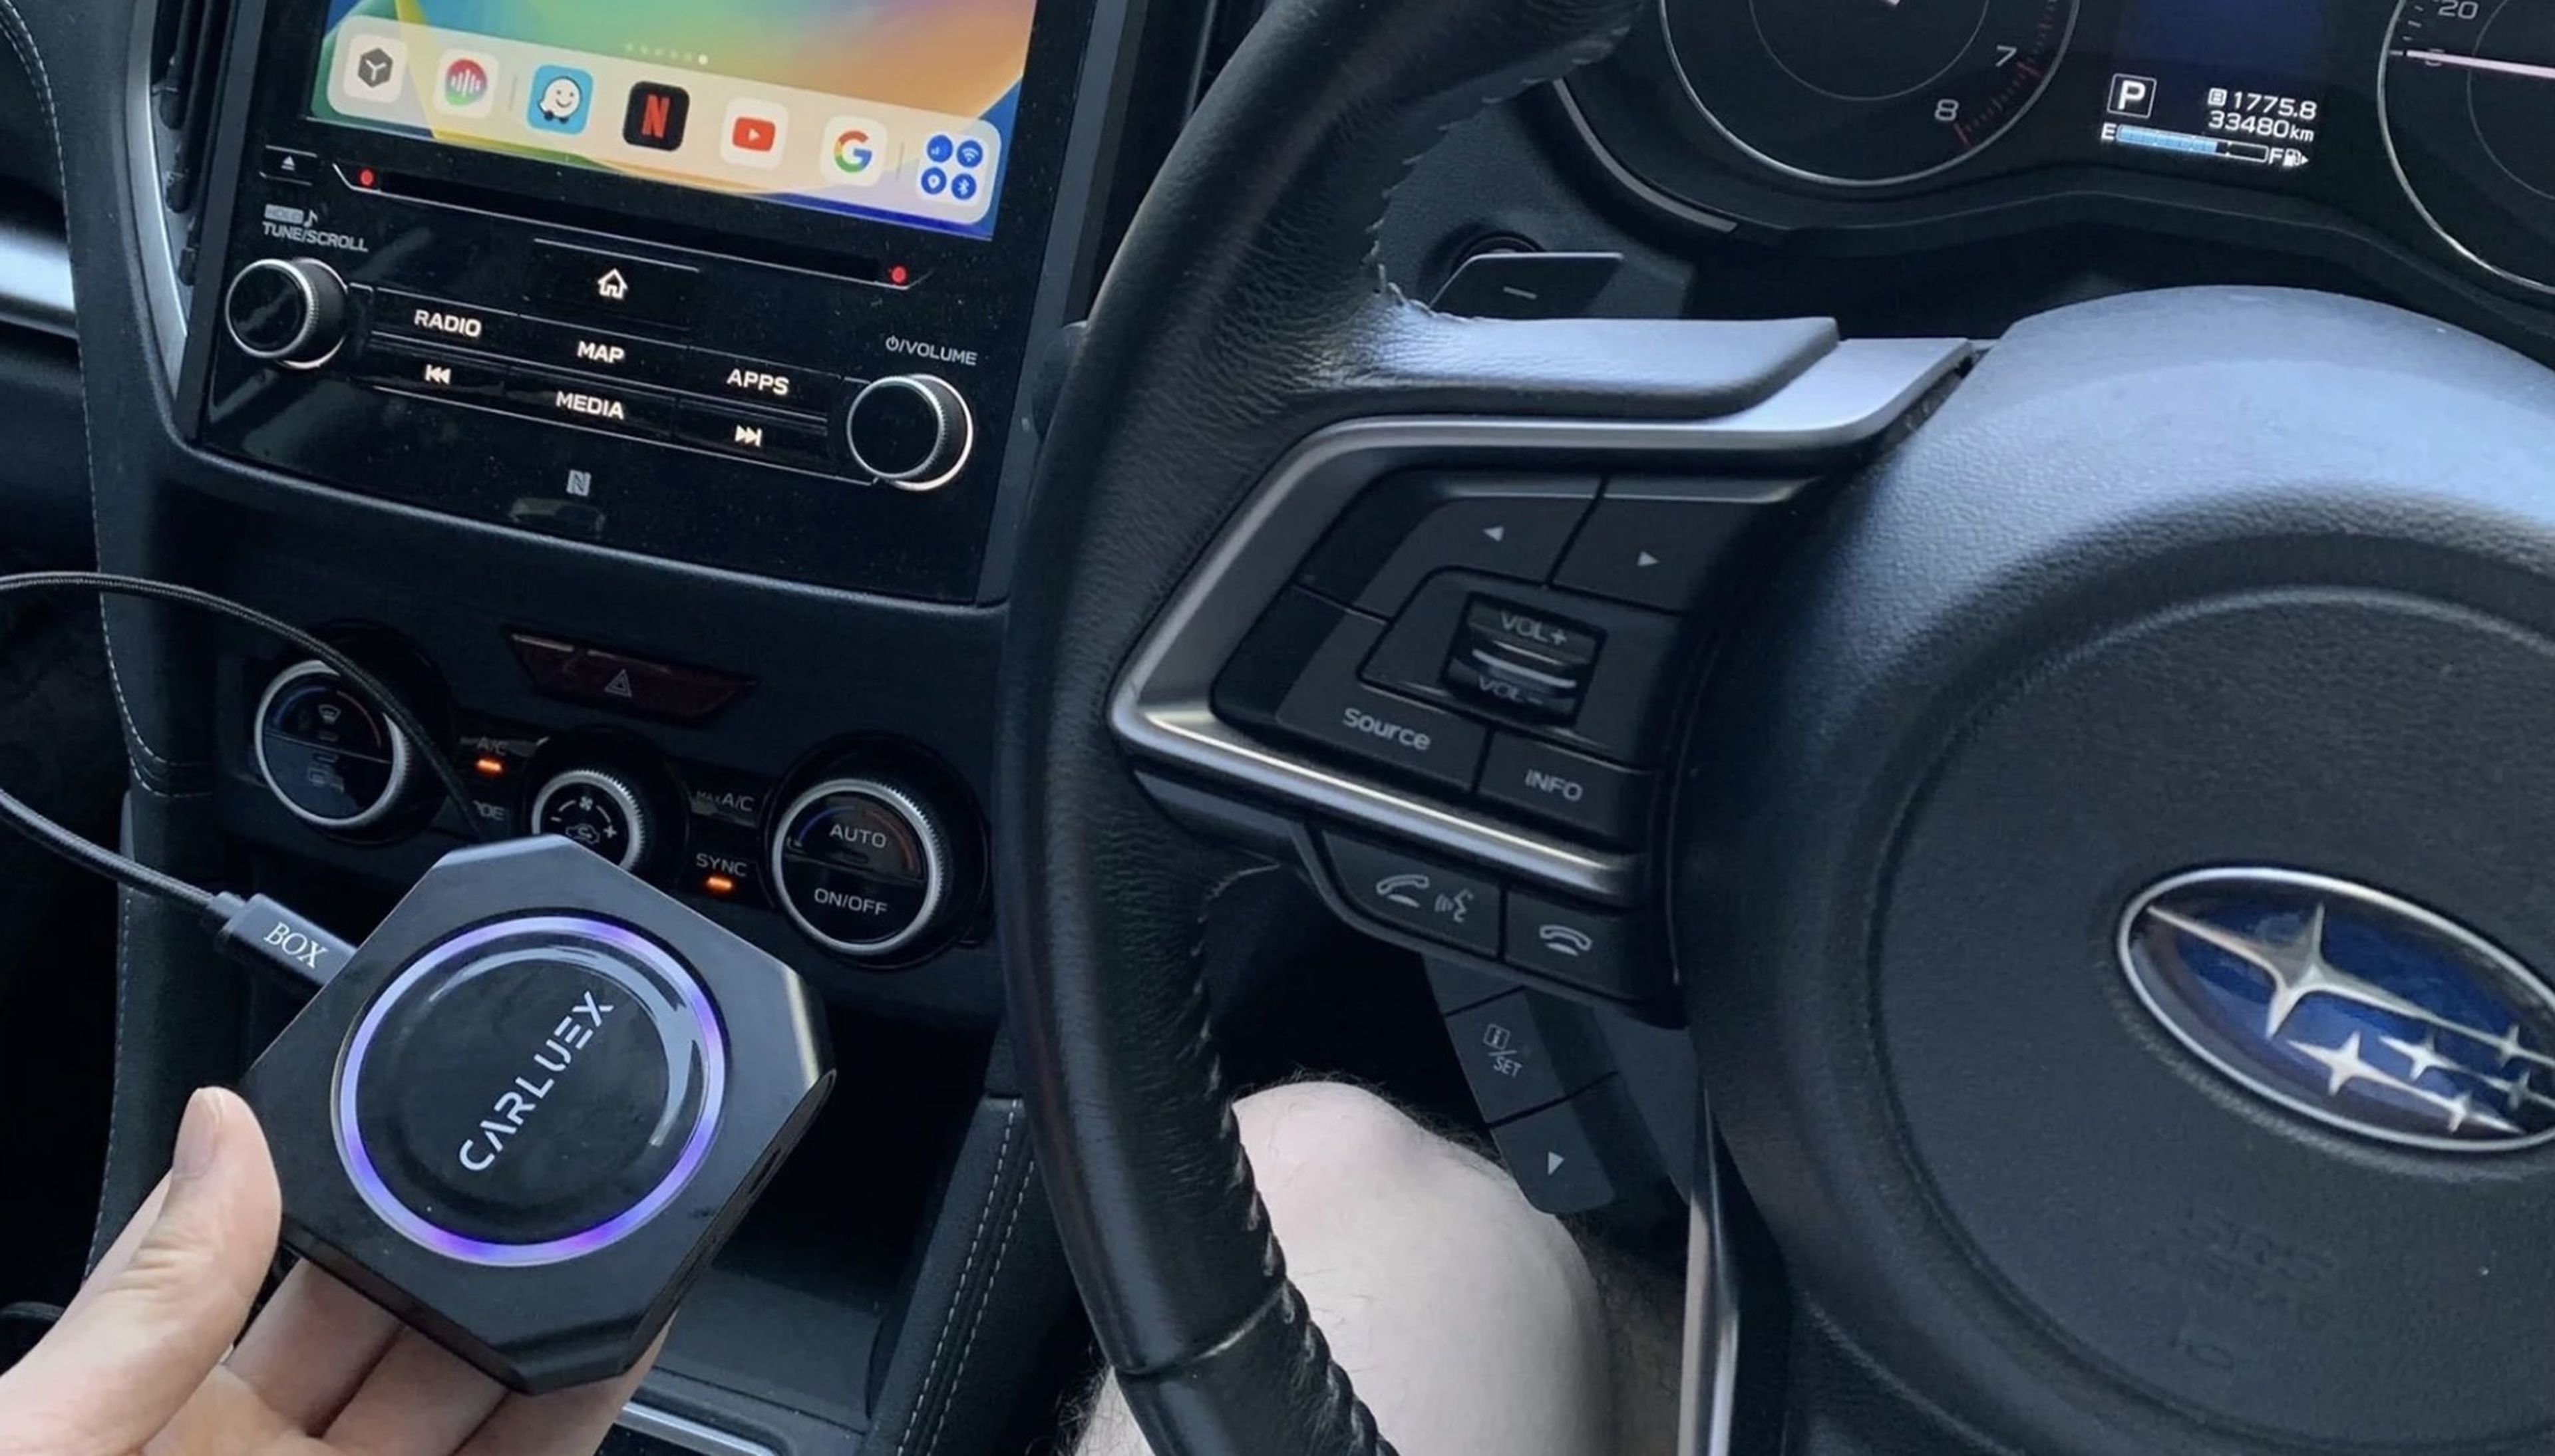 Este adaptador desbloquea Android completo en CarPlay o Android Auto